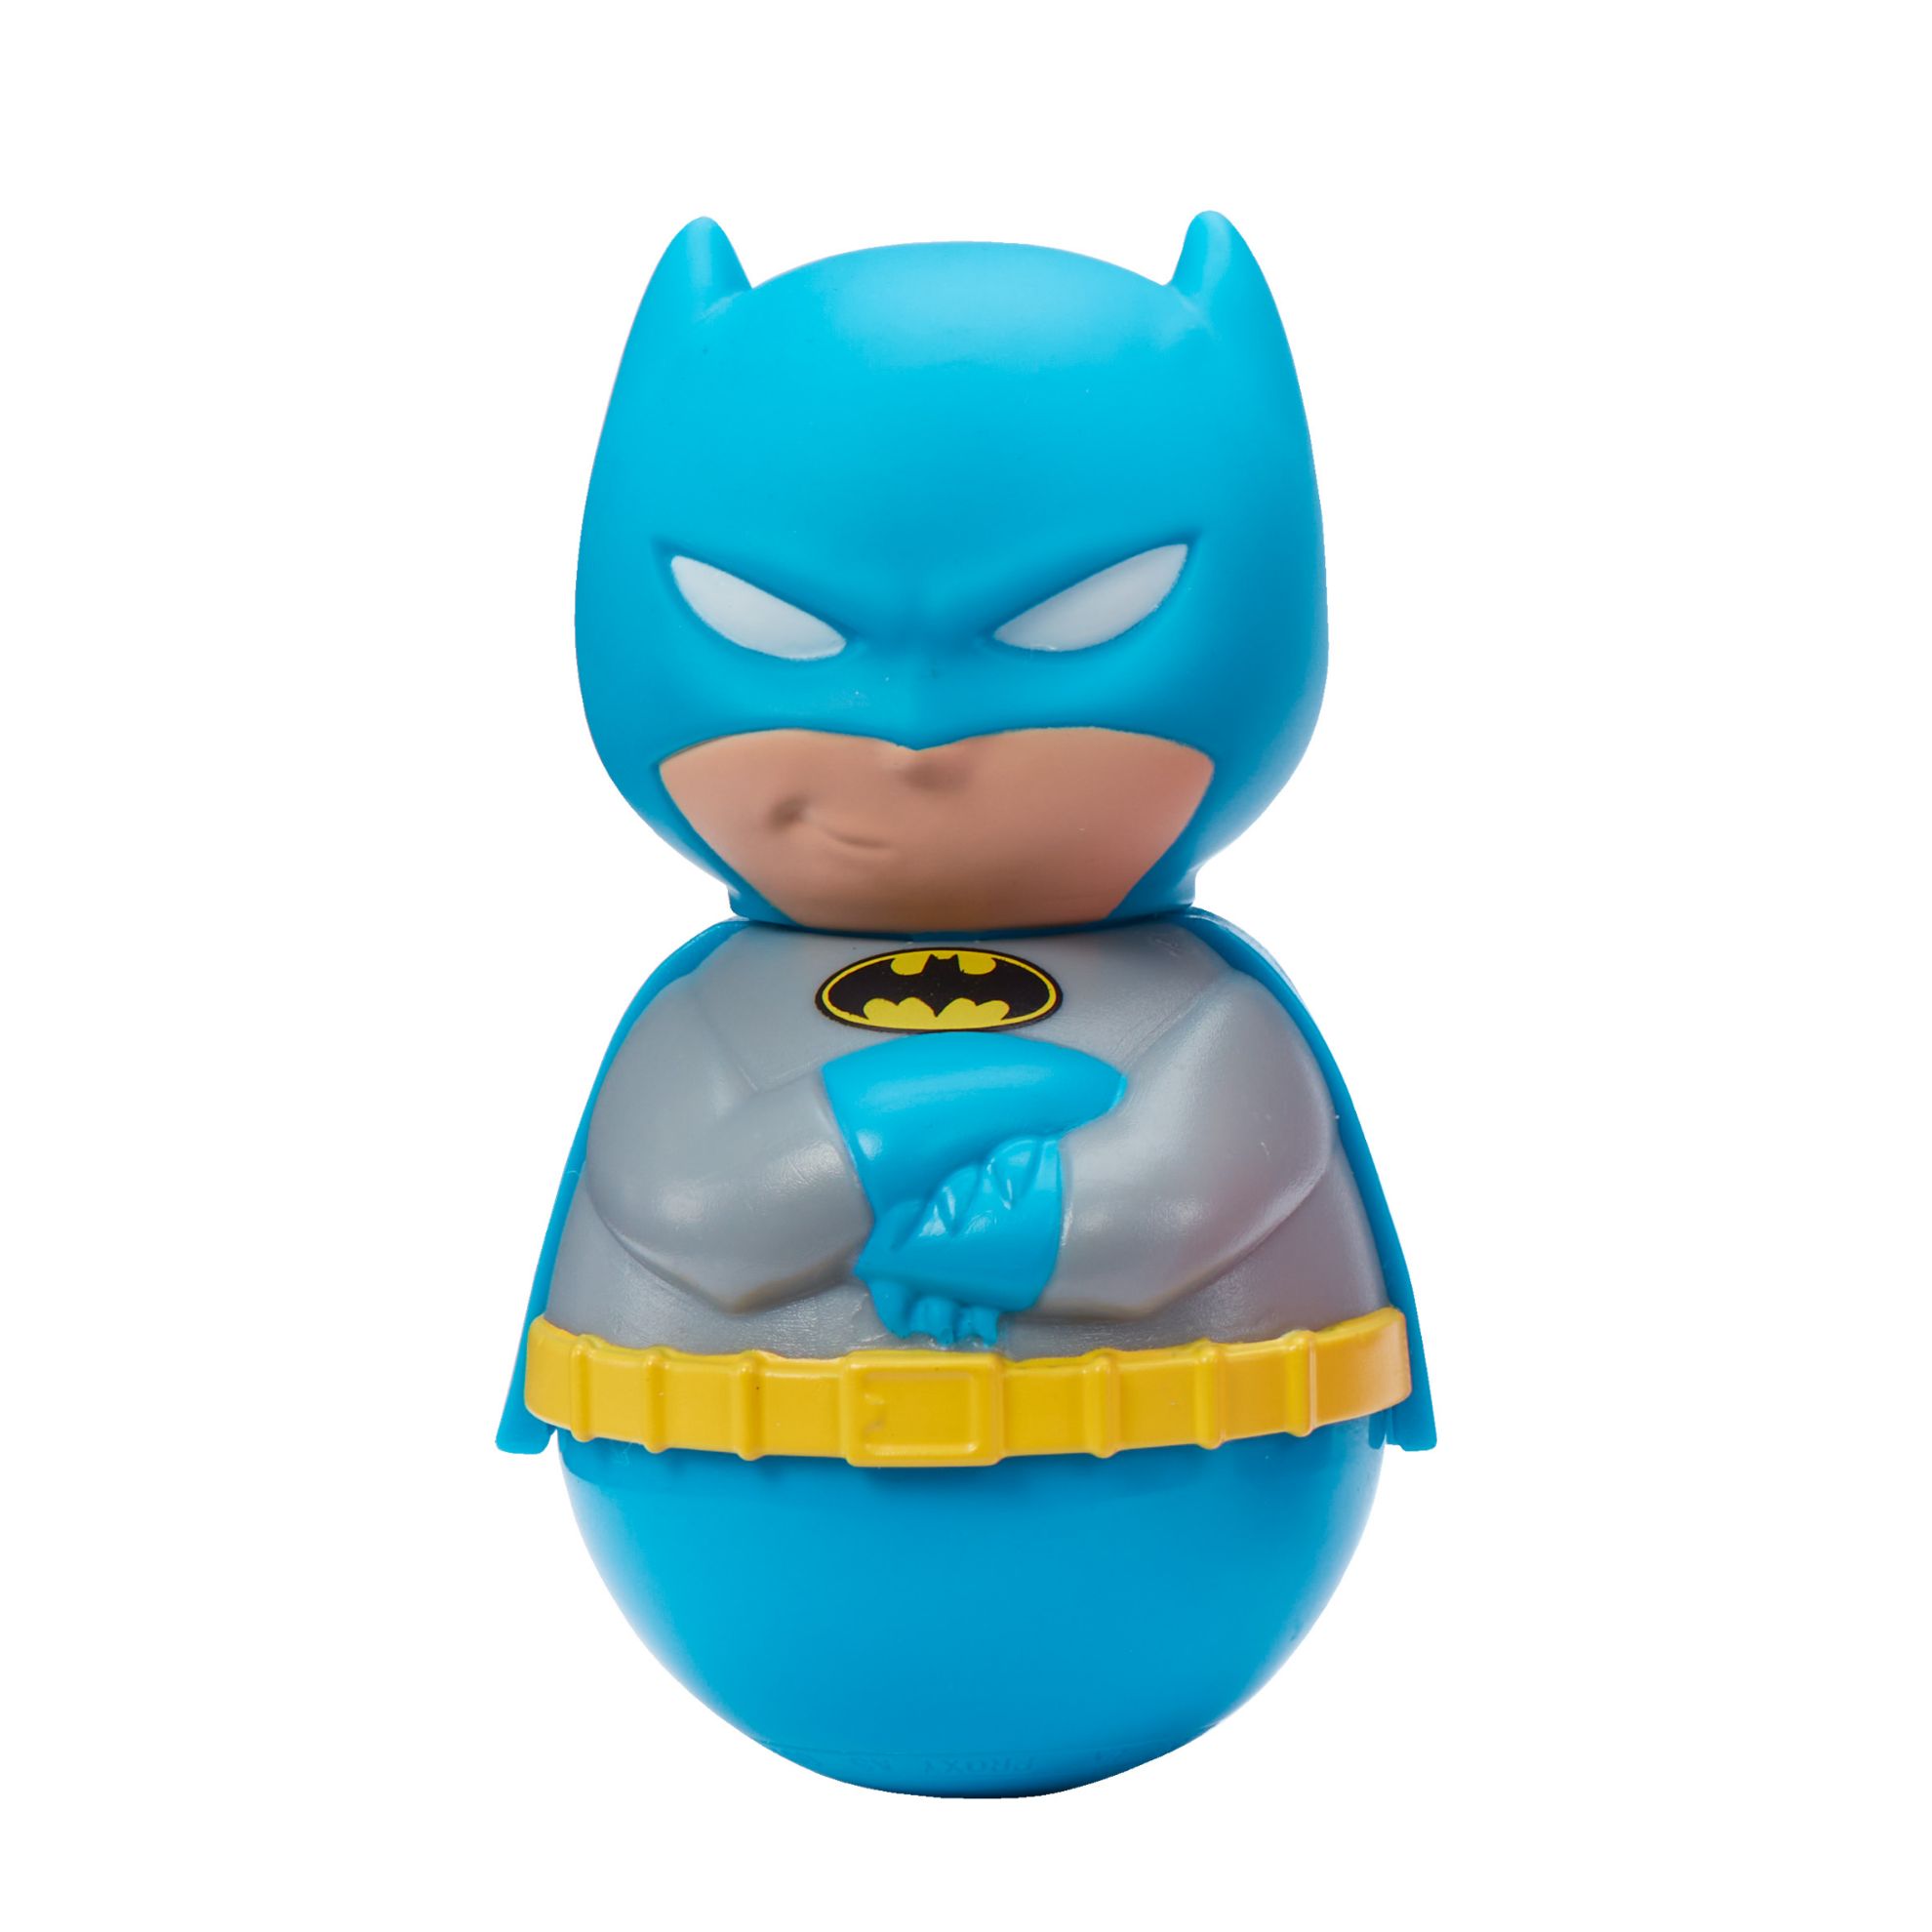 DC Super Friends Weebles Figures - Batman